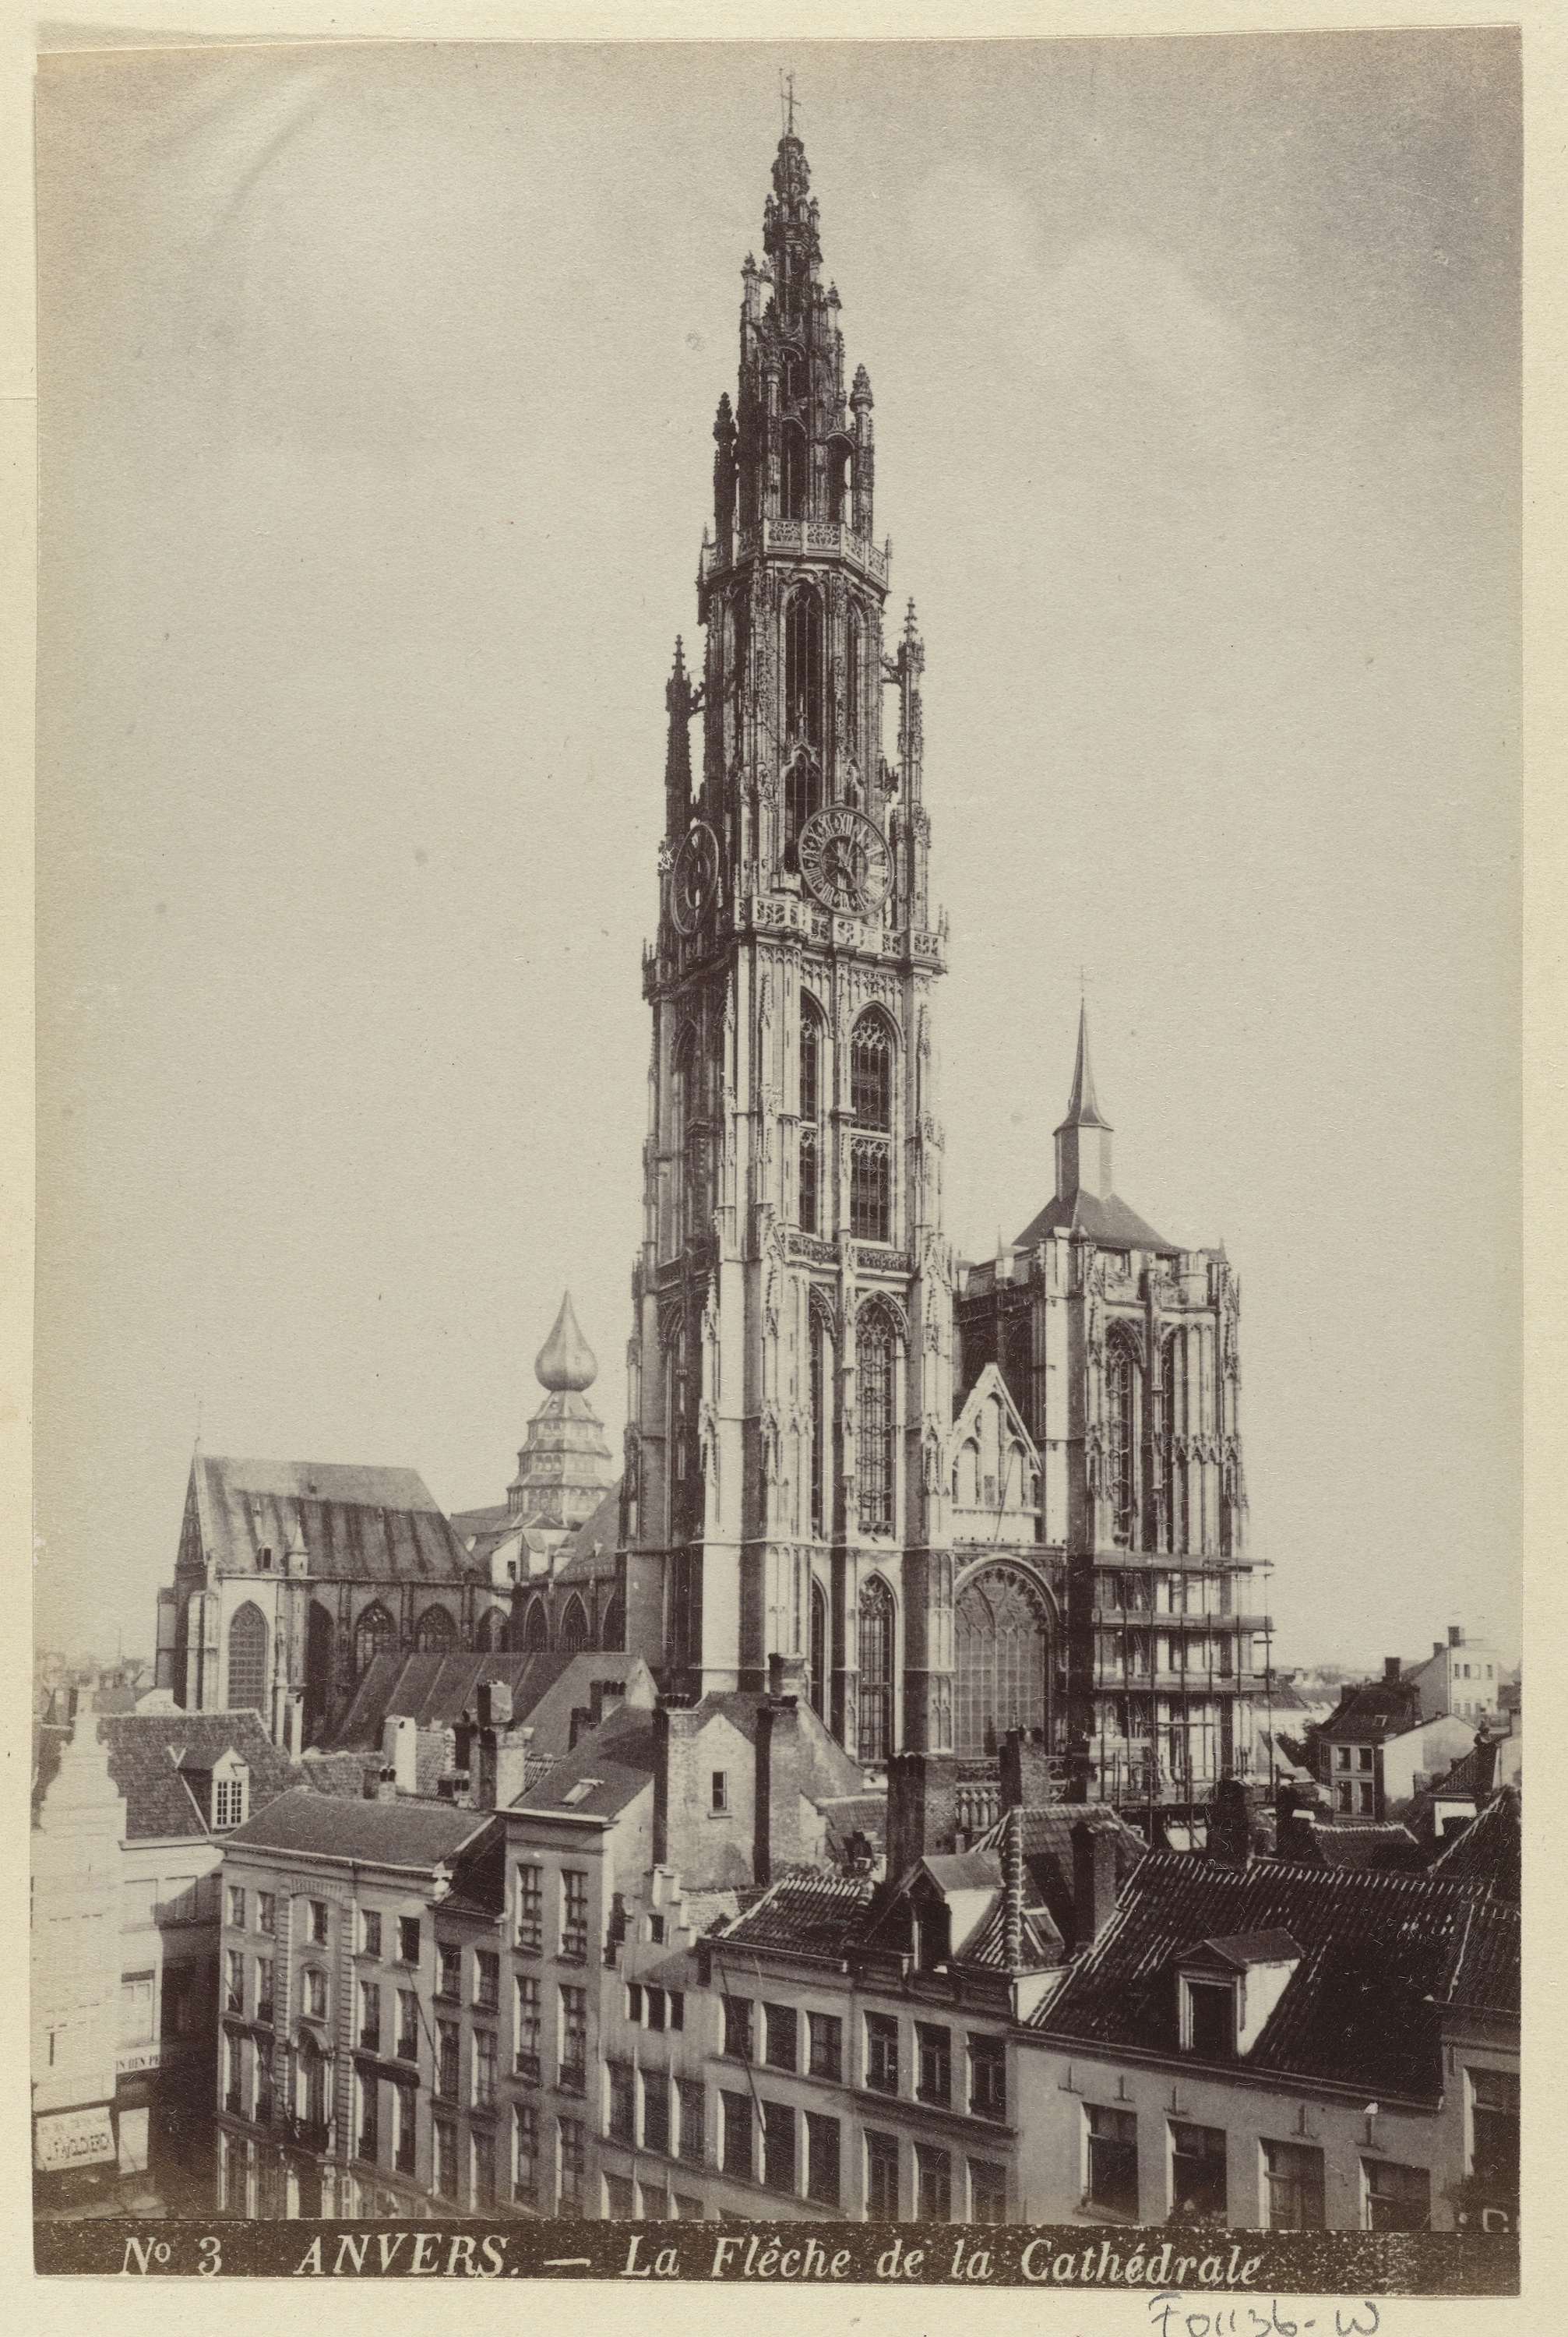 Anvers. - la Flêche de la Cathédrale, Exterieur van de Onze-Lieve-Vrouwekathedraal in Antwerp